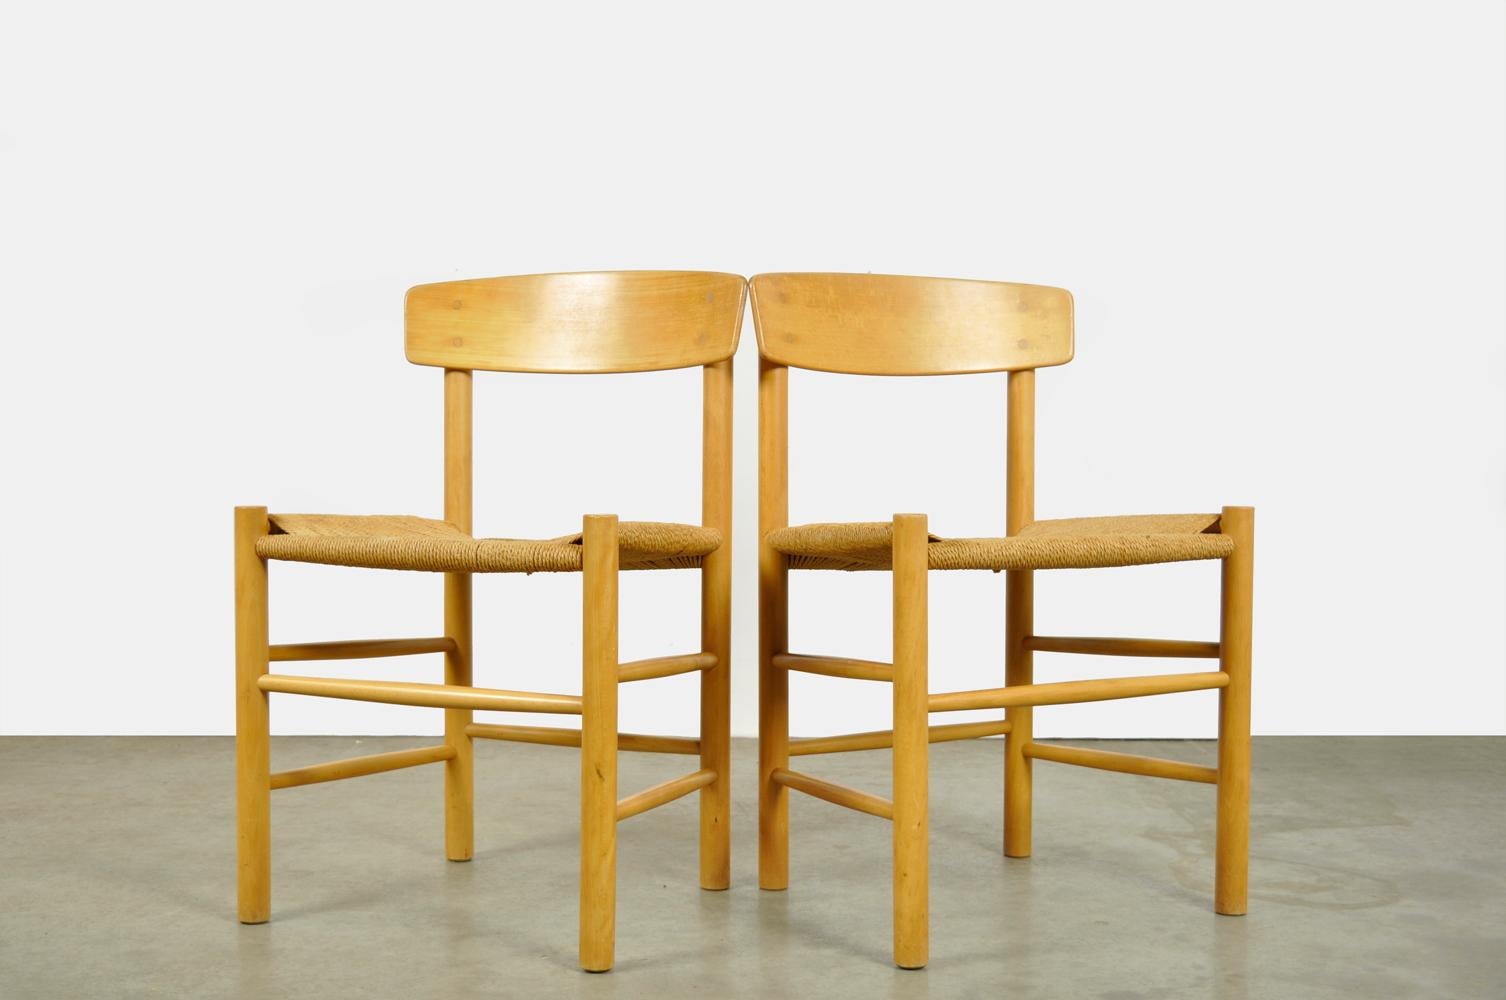 Scandinavian Modern Original Beech Dining Chairs, J39, by Børge Mogensen for F.D.B. Mobler, Denmark